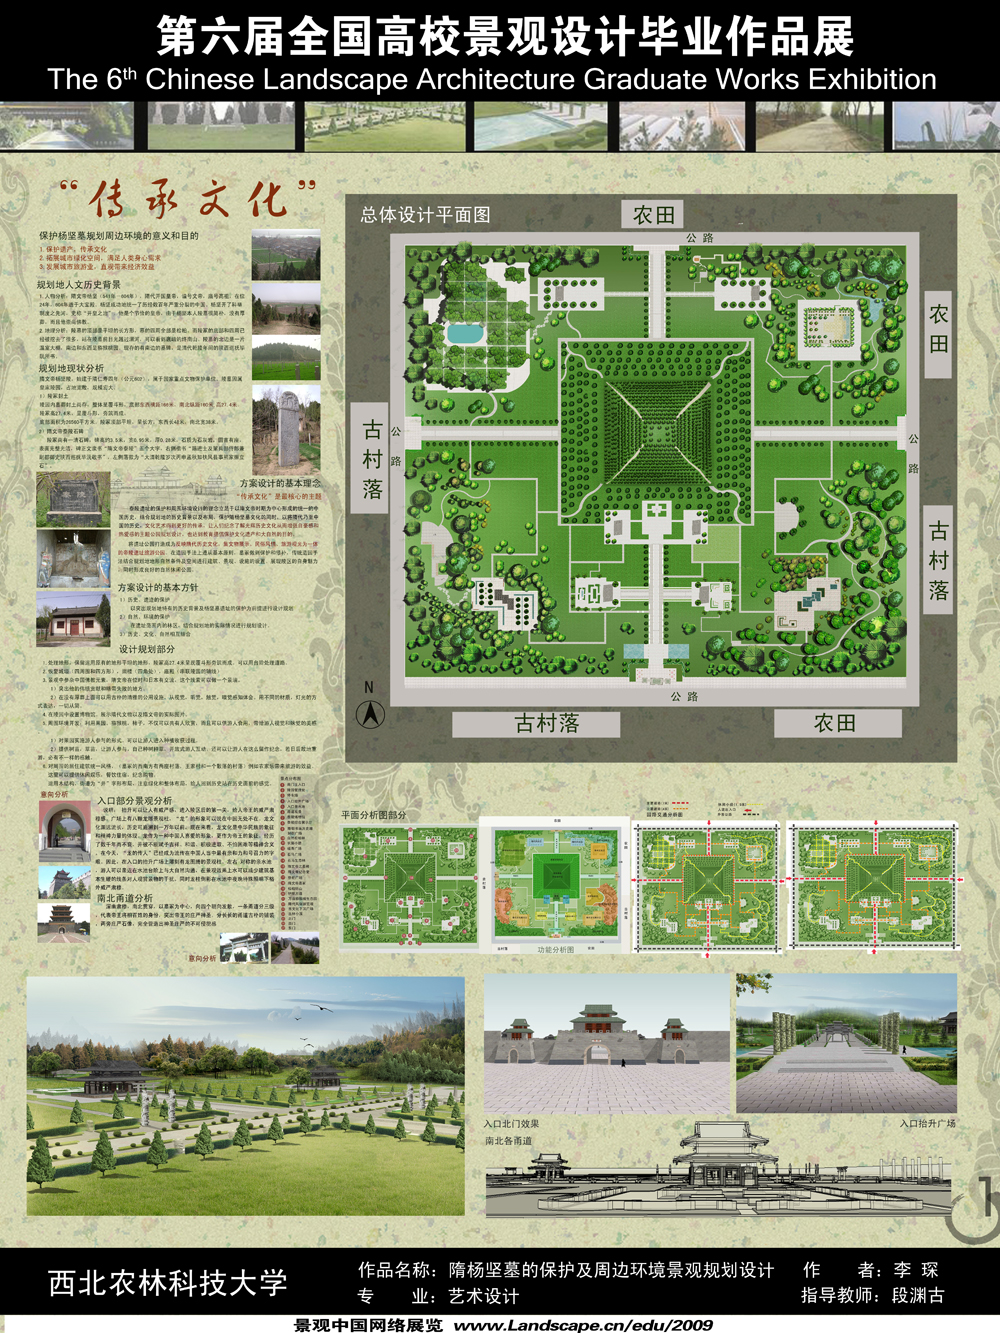 杨凌隋杨坚墓的保护及周边环境景观规划设计-1